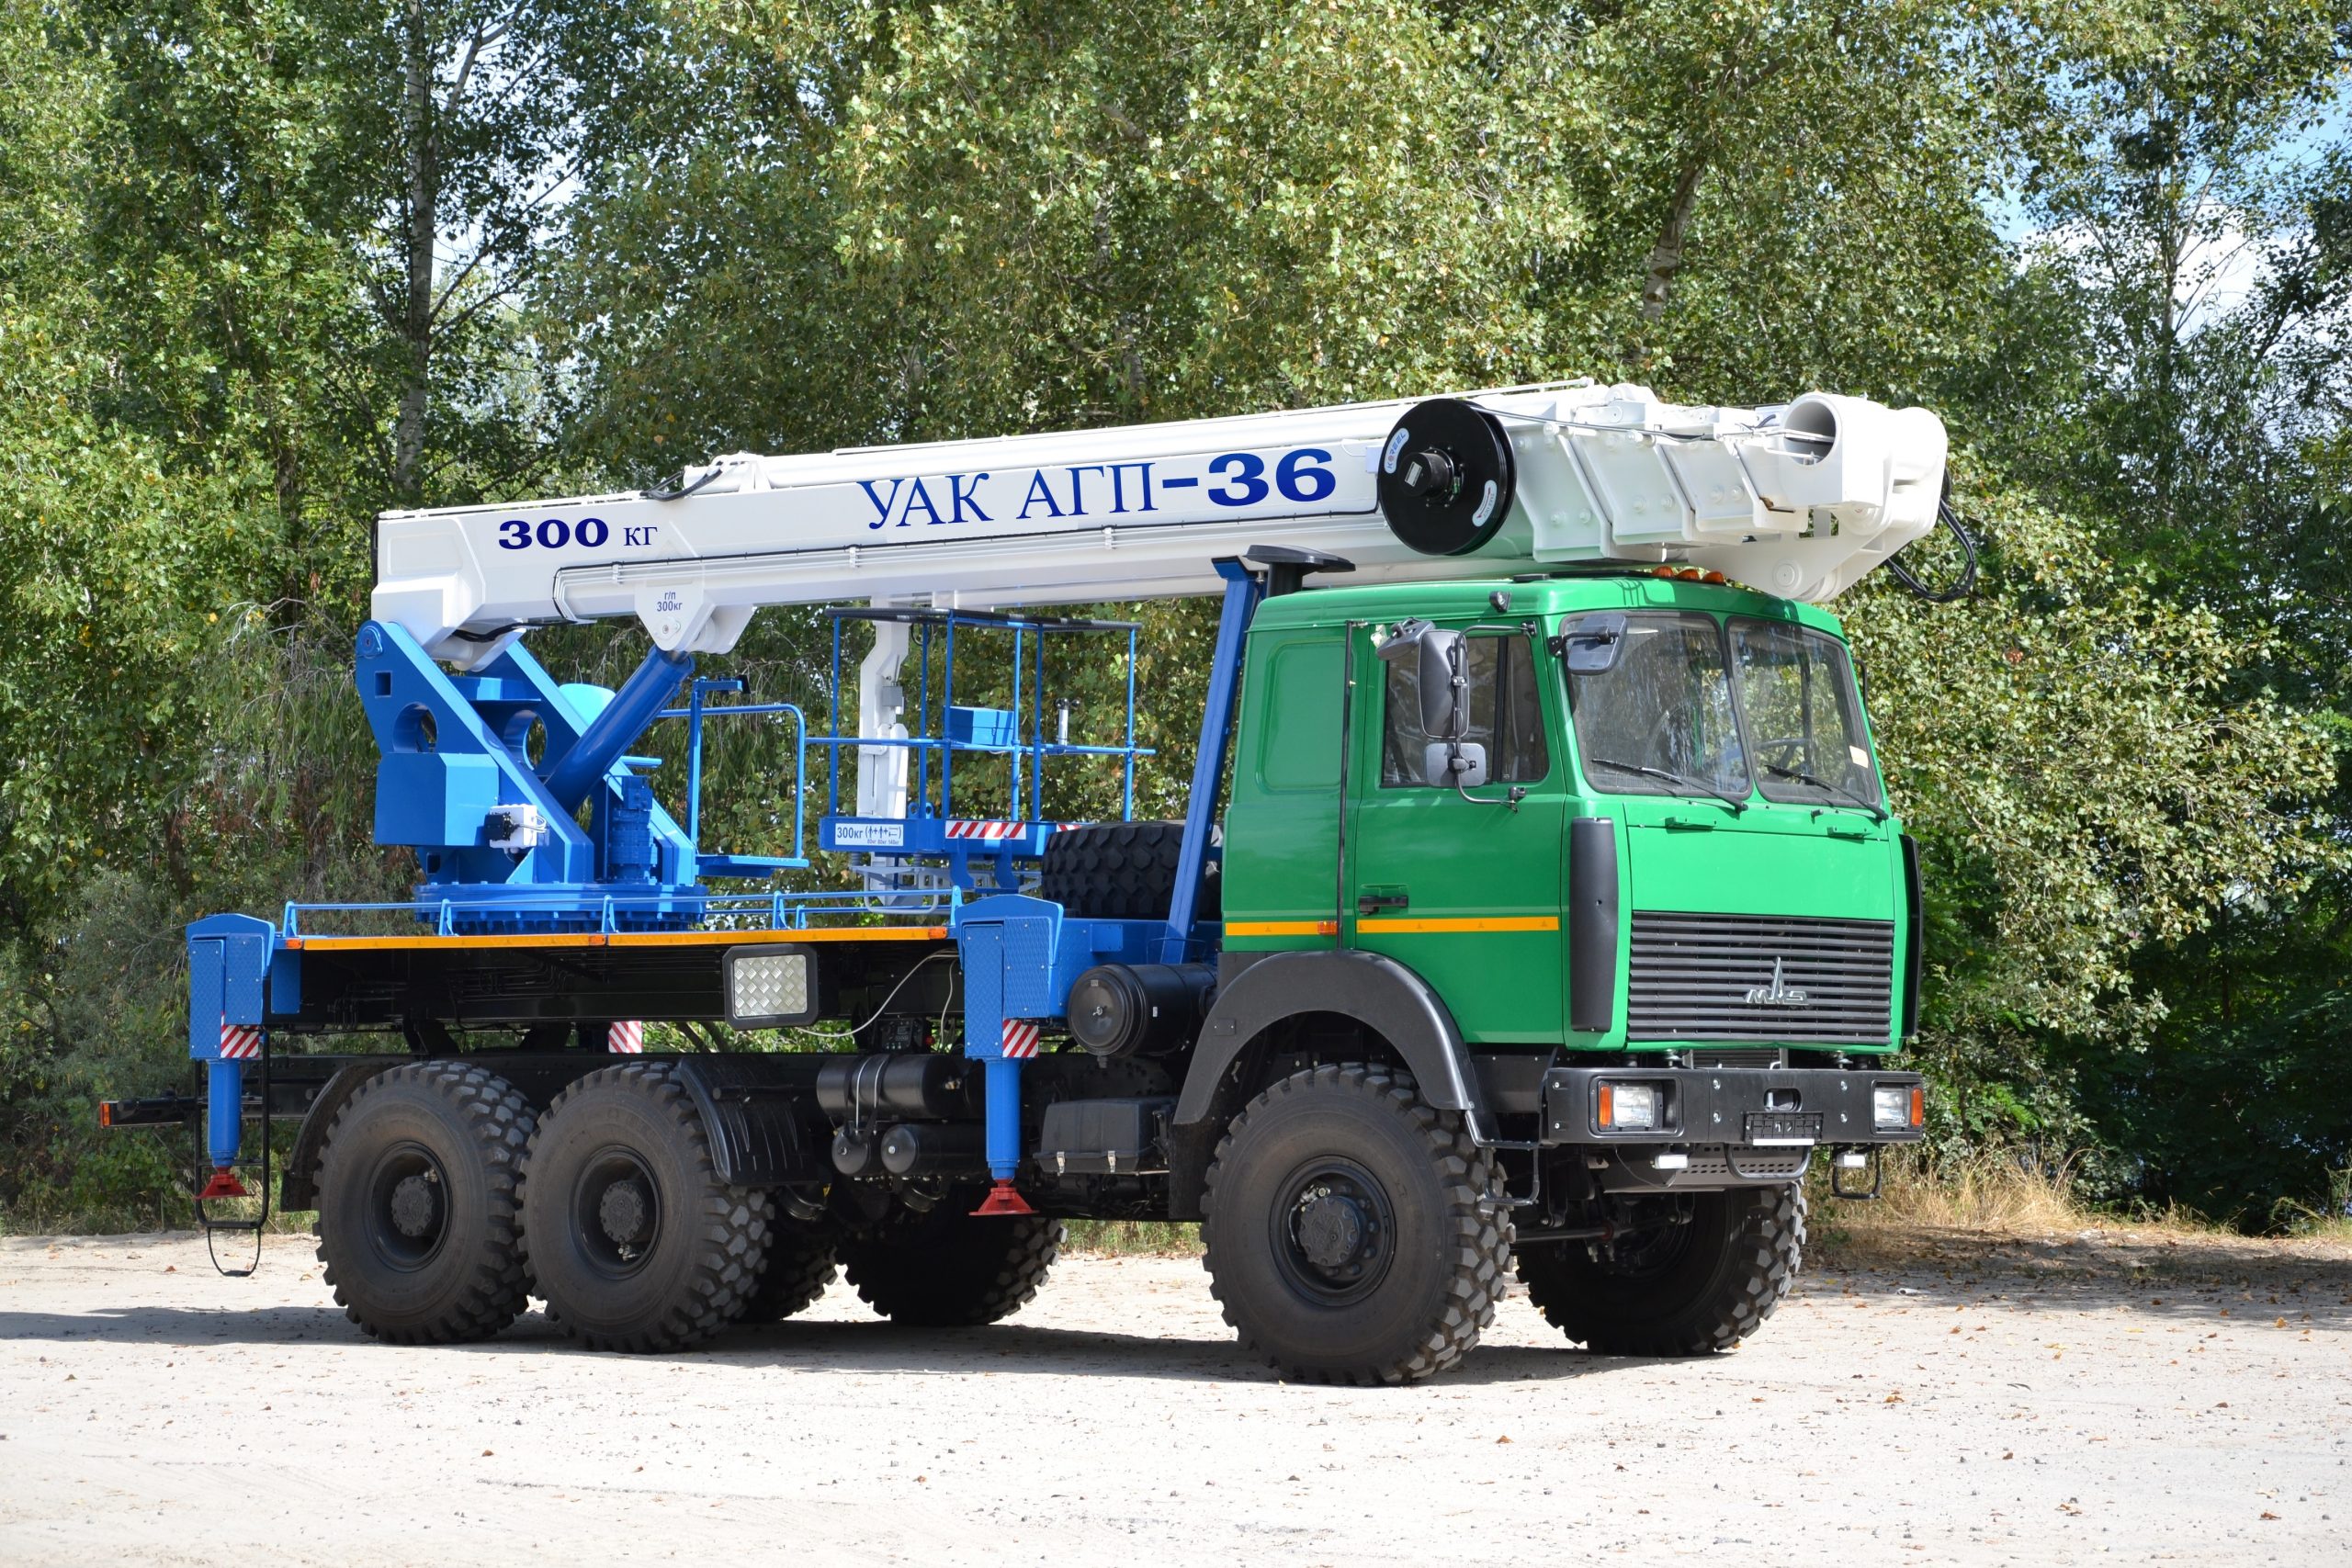 В Украине выпустили автогидроподъёмник УАК АГП-36 на шасси МАЗ 6317 6х6